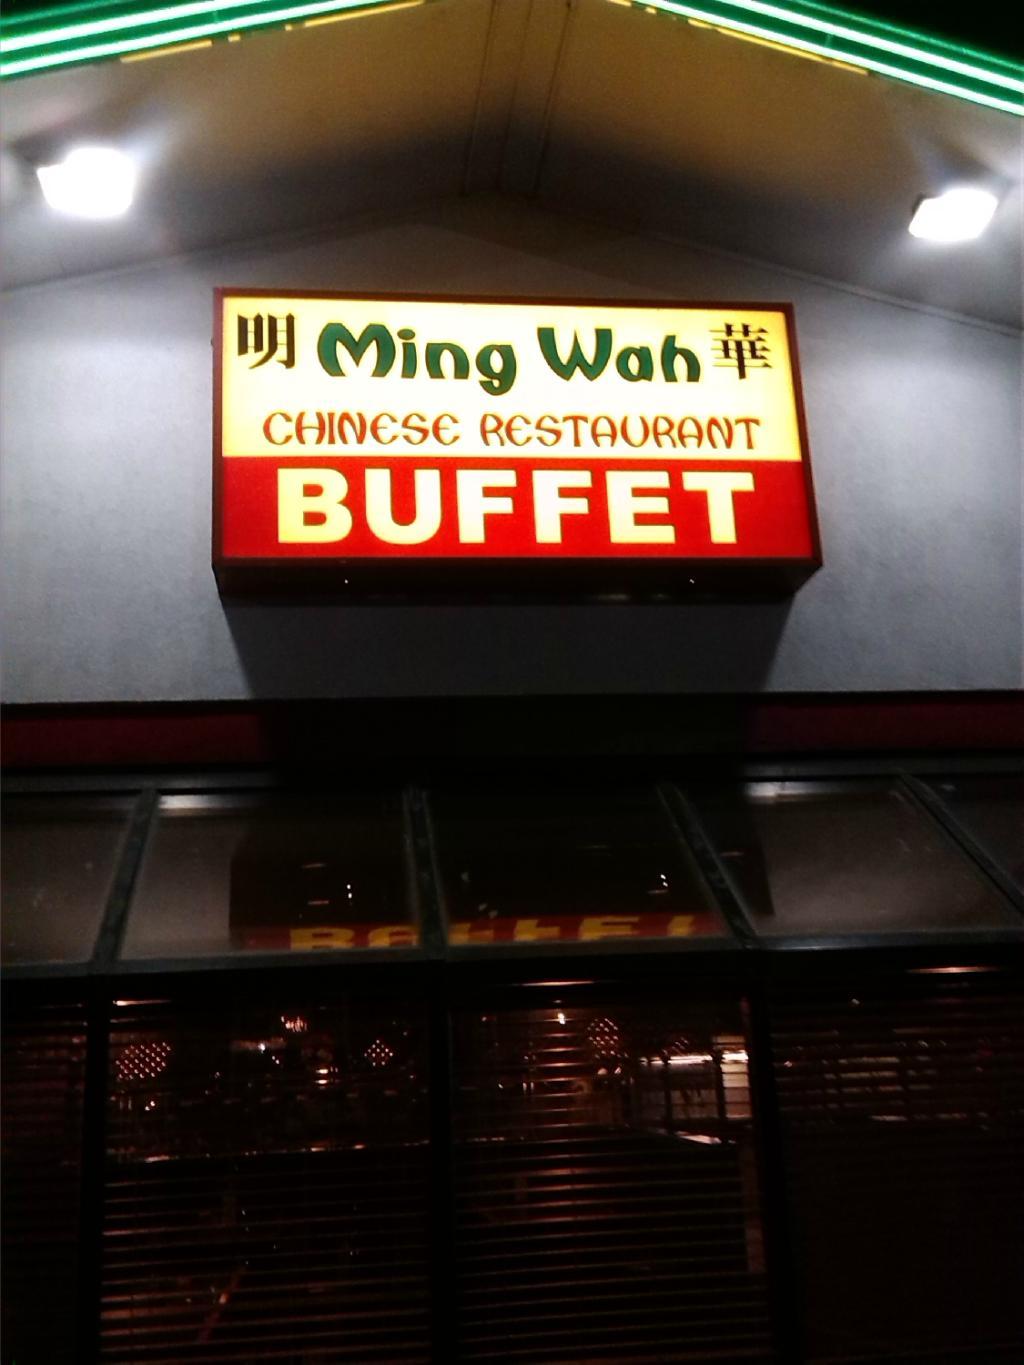 Ming Wah Buffet Restaurant